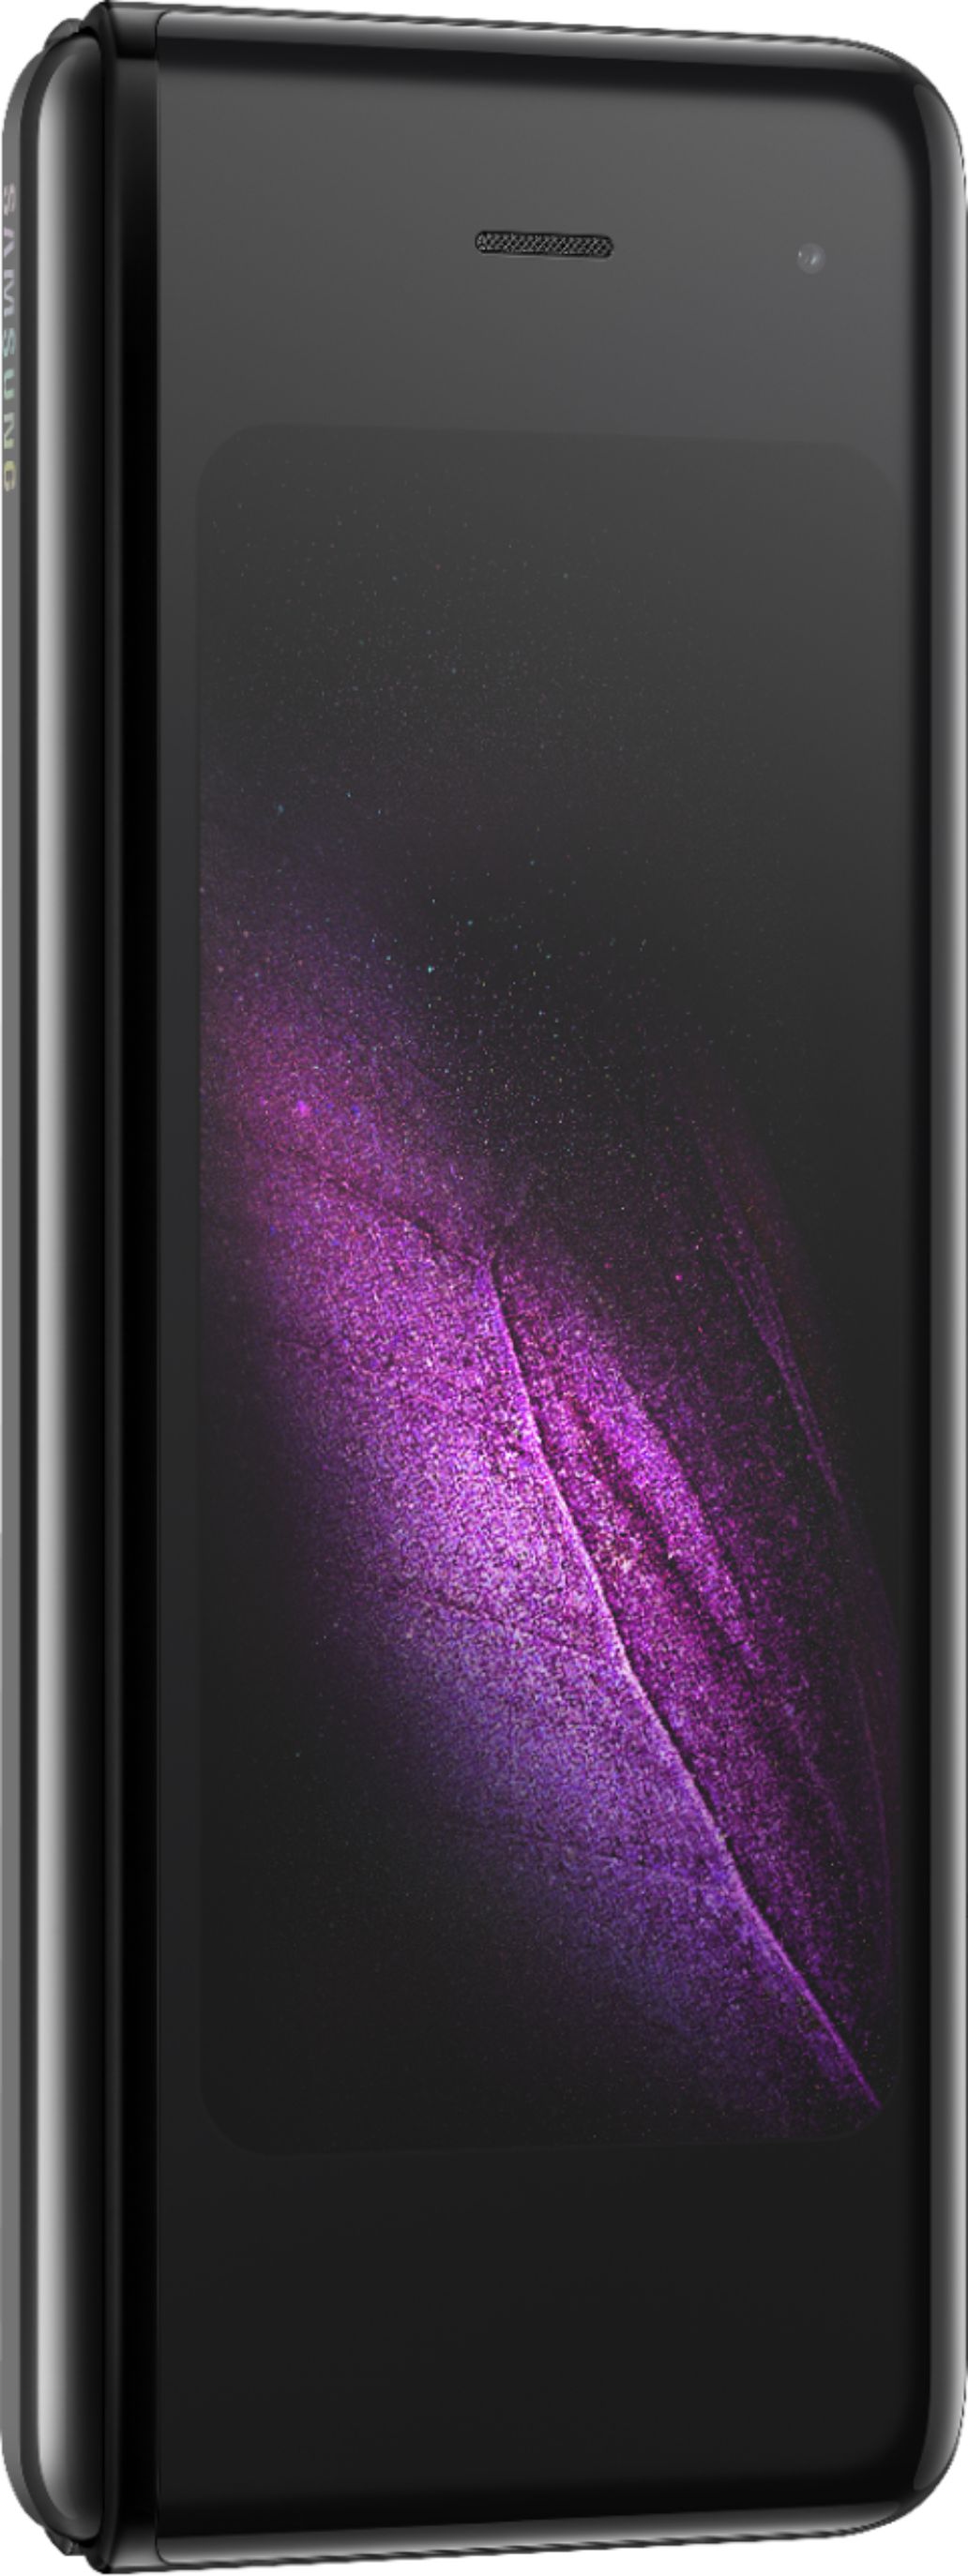 スマートフォン/携帯電話 携帯電話本体 Best Buy: Samsung Galaxy Fold with 512GB Memory Cell Phone (Unlocked)  Cosmos Black SM-F900UZKDXAA